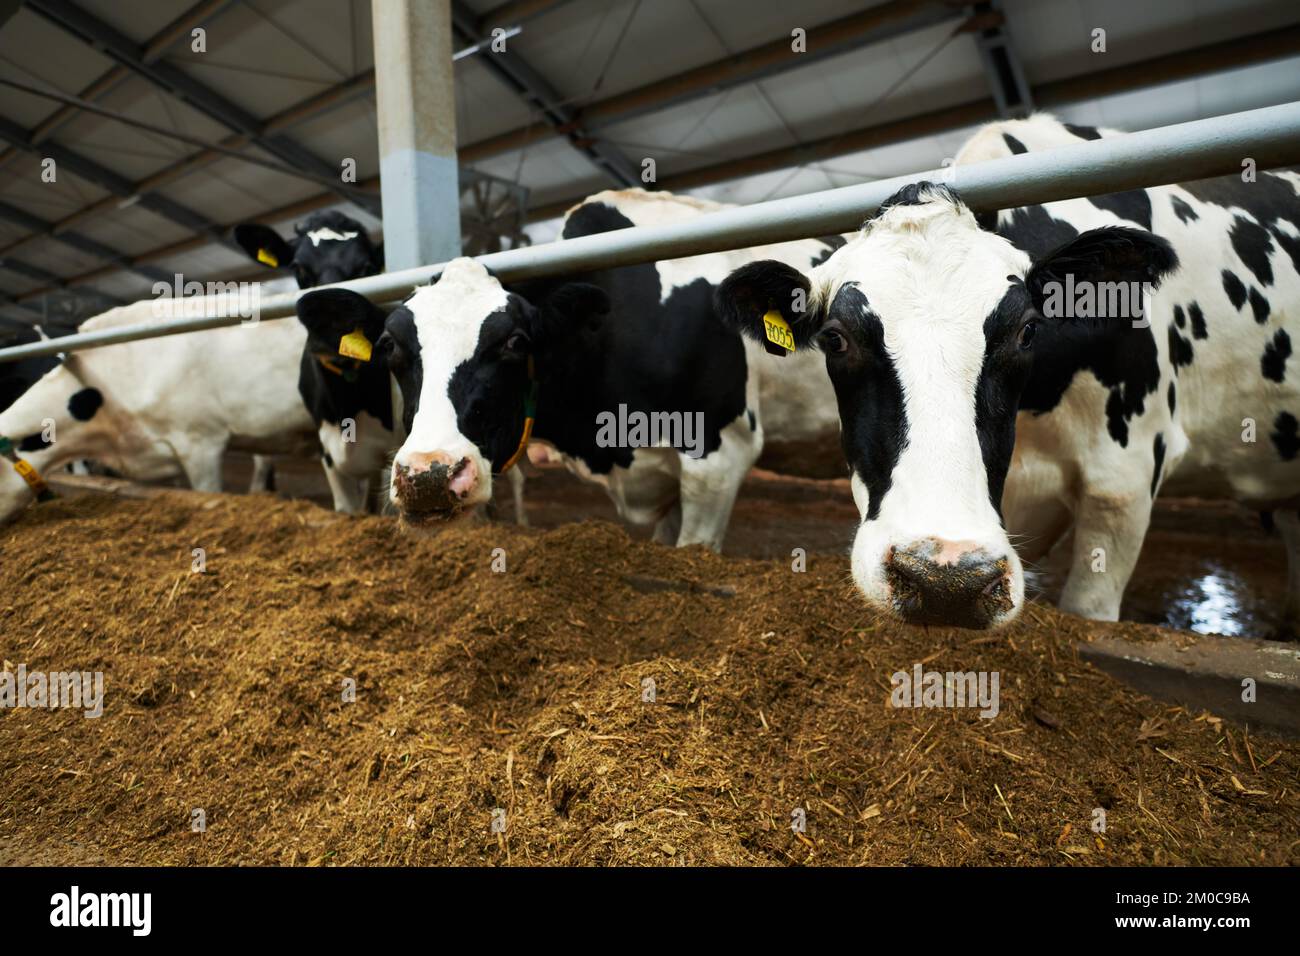 Grupo de vacas lecheras de raza blanca y negra de pie en el cowshed delante del alimentador y la forja de comer mientras uno de ellos mira la cámara Foto de stock